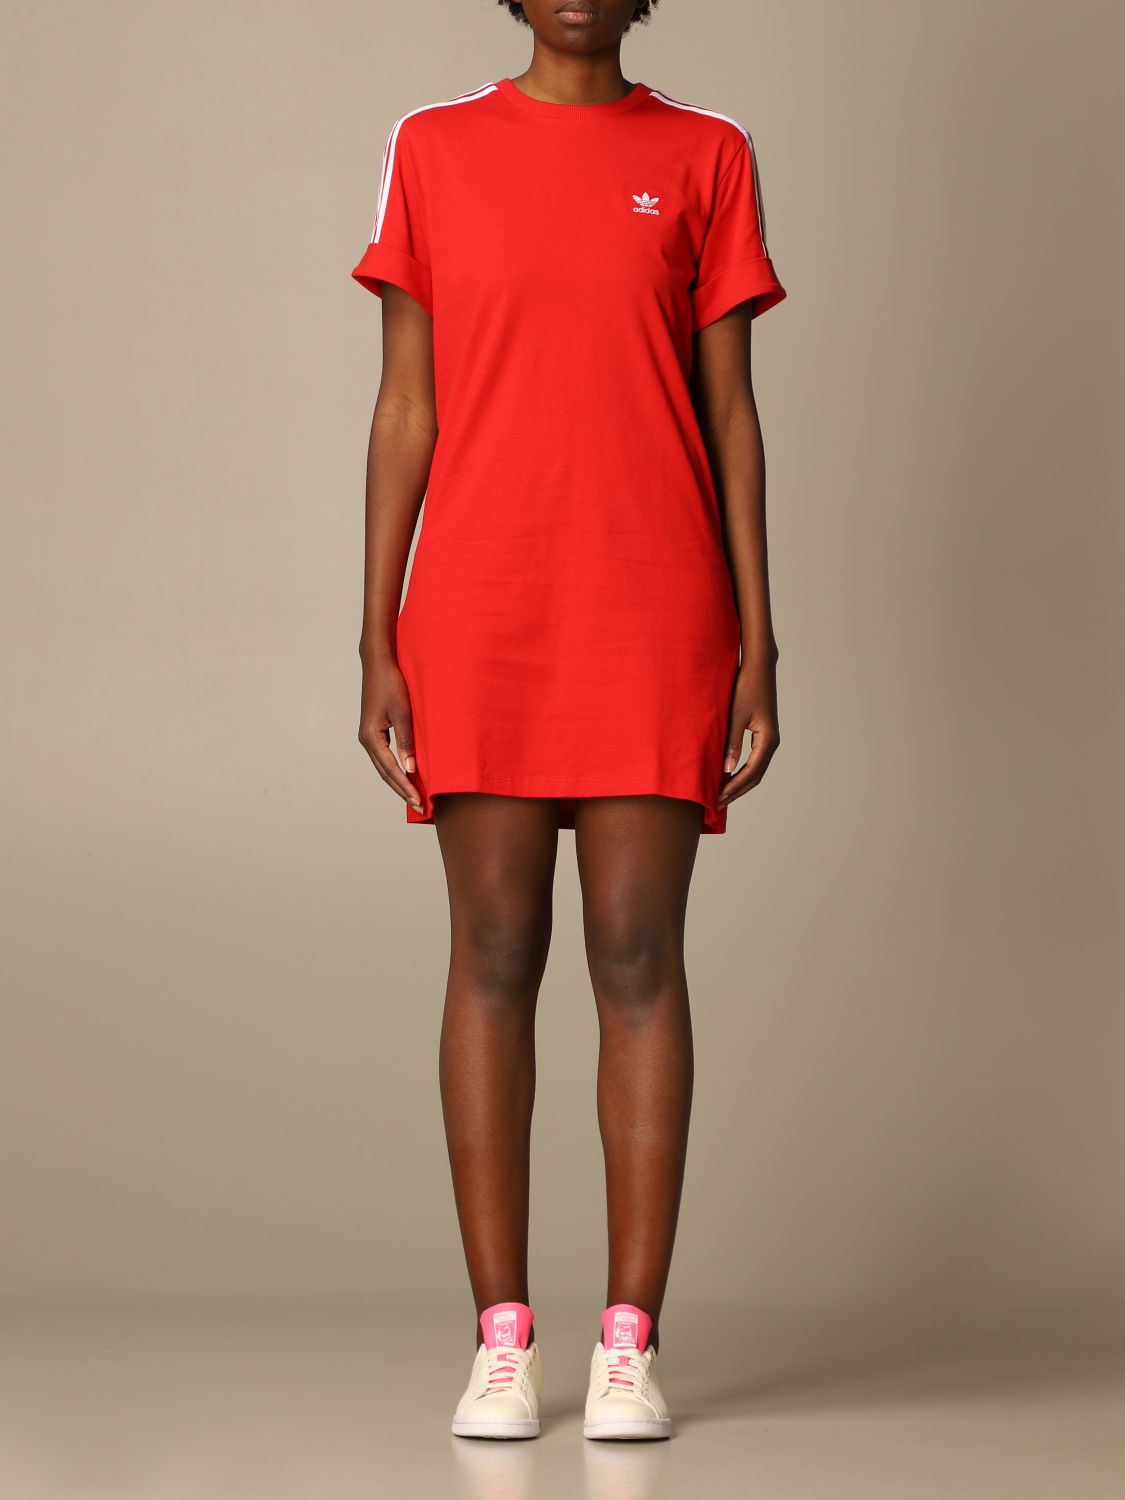 ADIDAS ORIGINALS: dress for woman - Red | Adidas Originals dress GN2778 ...